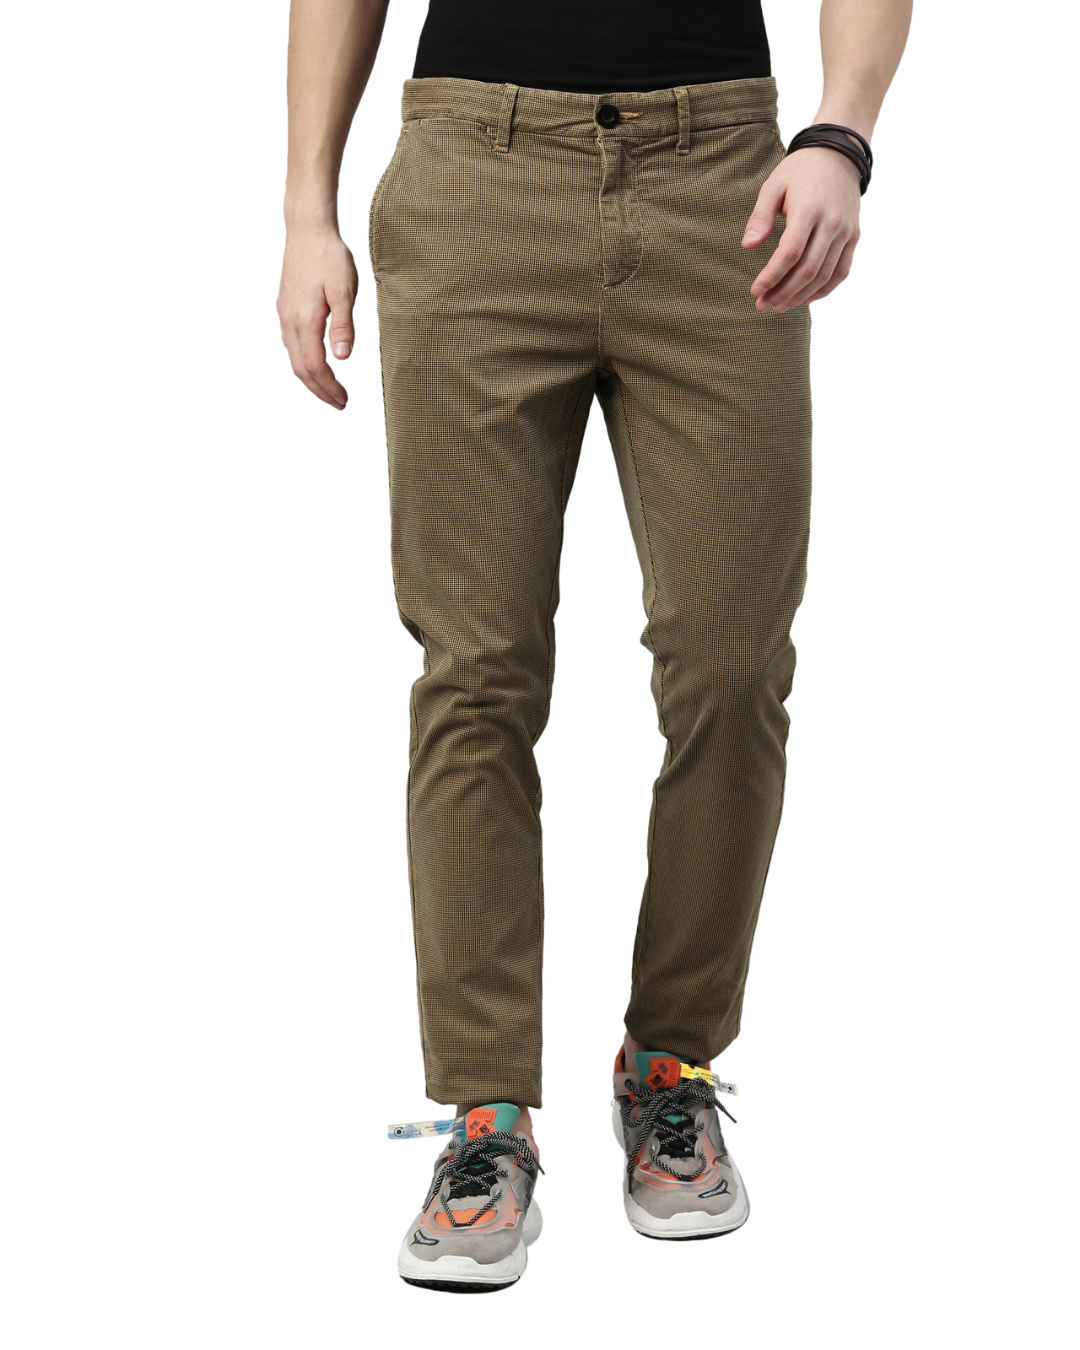 Buy Men's Beige Slim Fit Trouser for Men Beige Online at Bewakoof